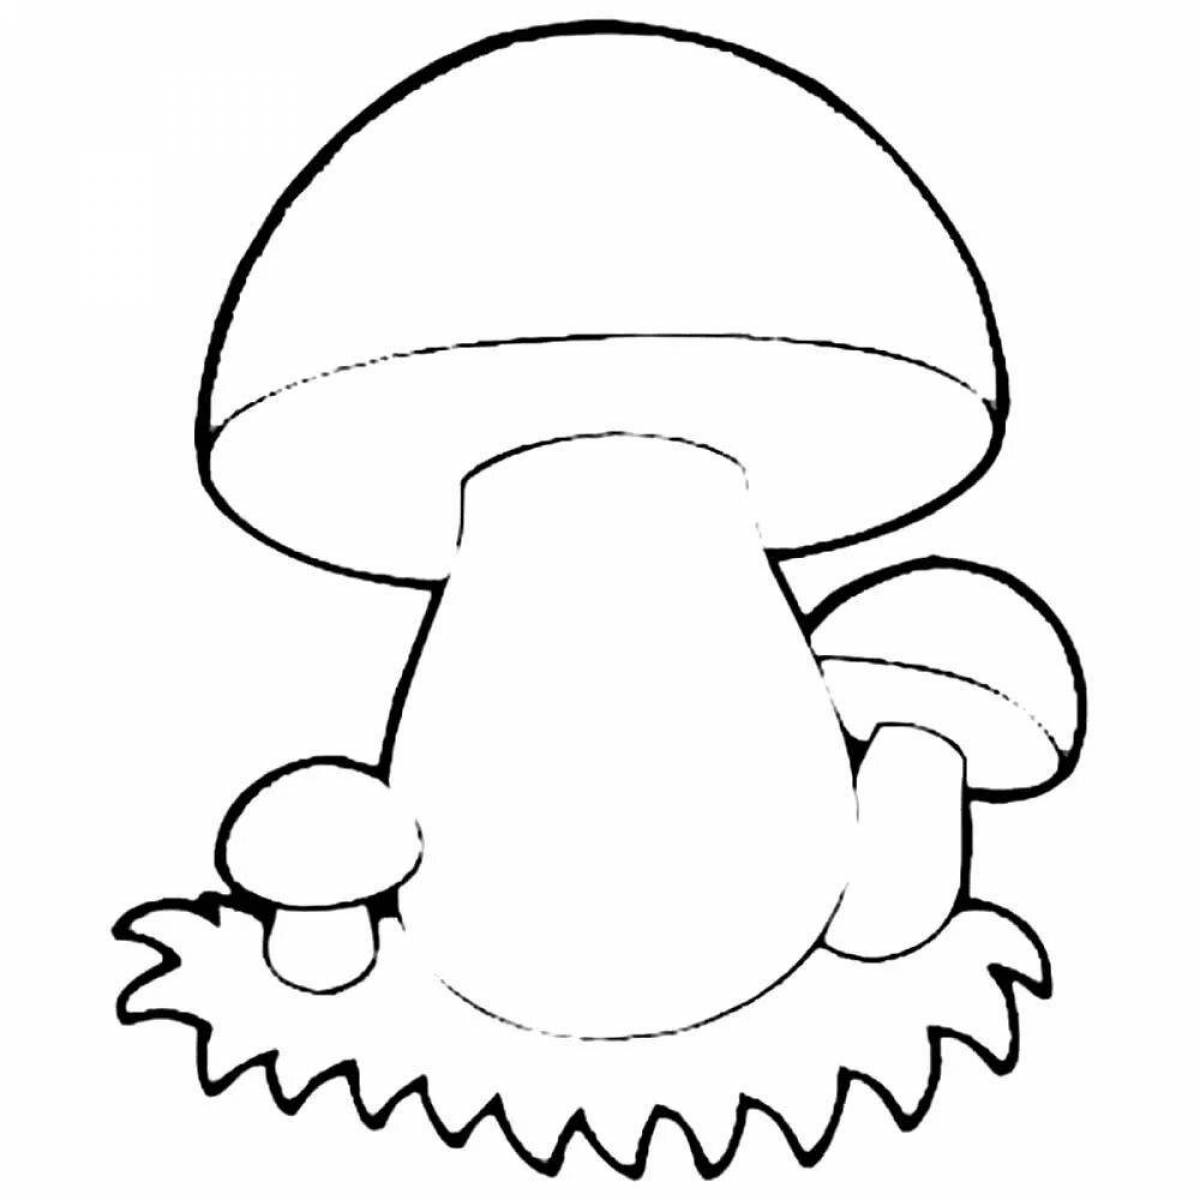 Humorous coloring of mushrooms for children